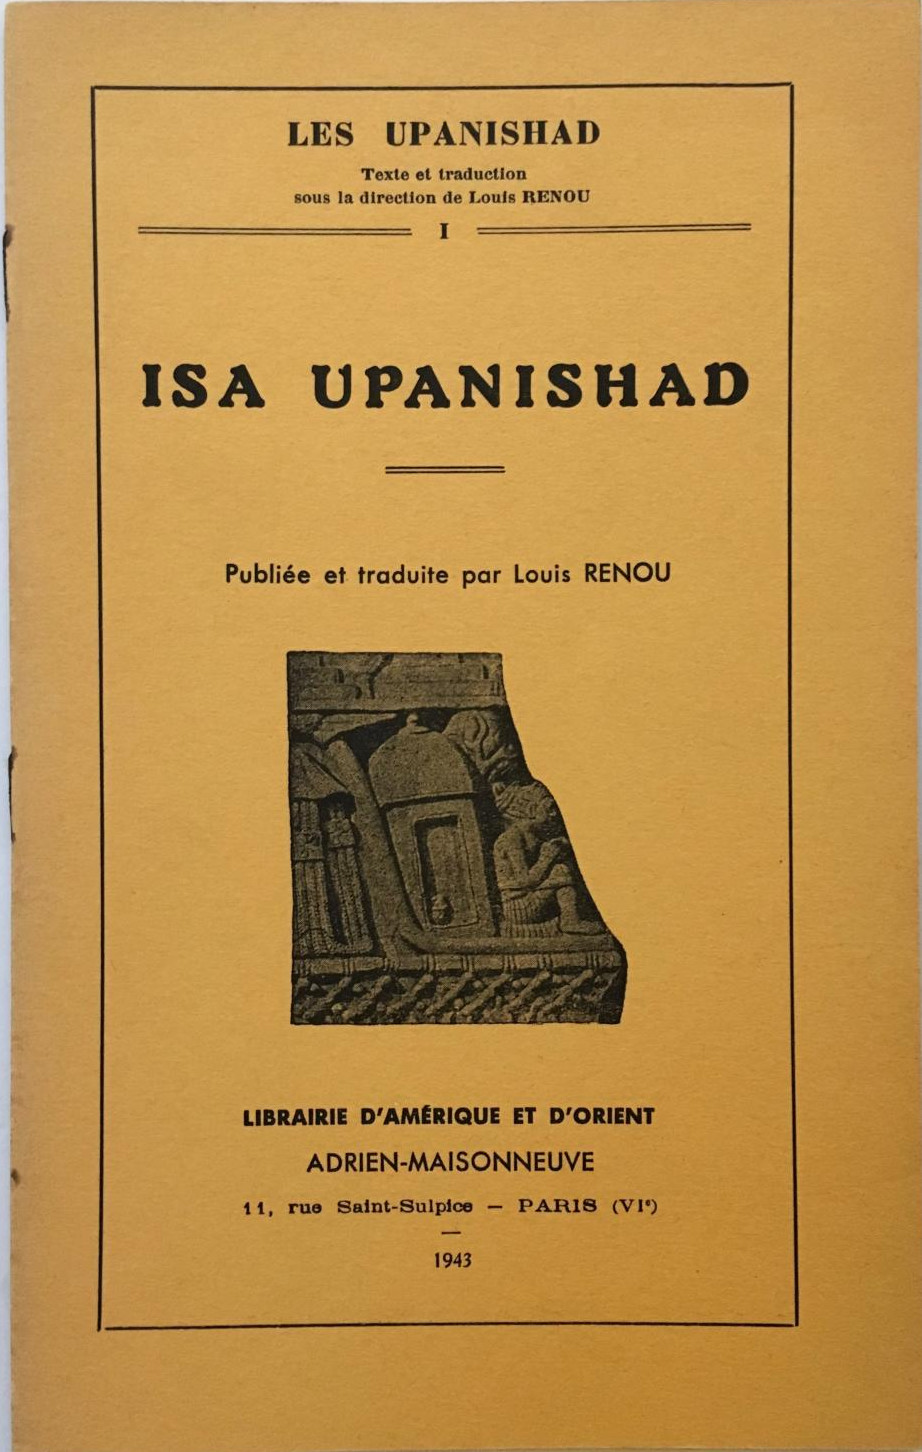 Isa Upanishad (Les Upanishad) (Adrien-Maisonneuve) (image)